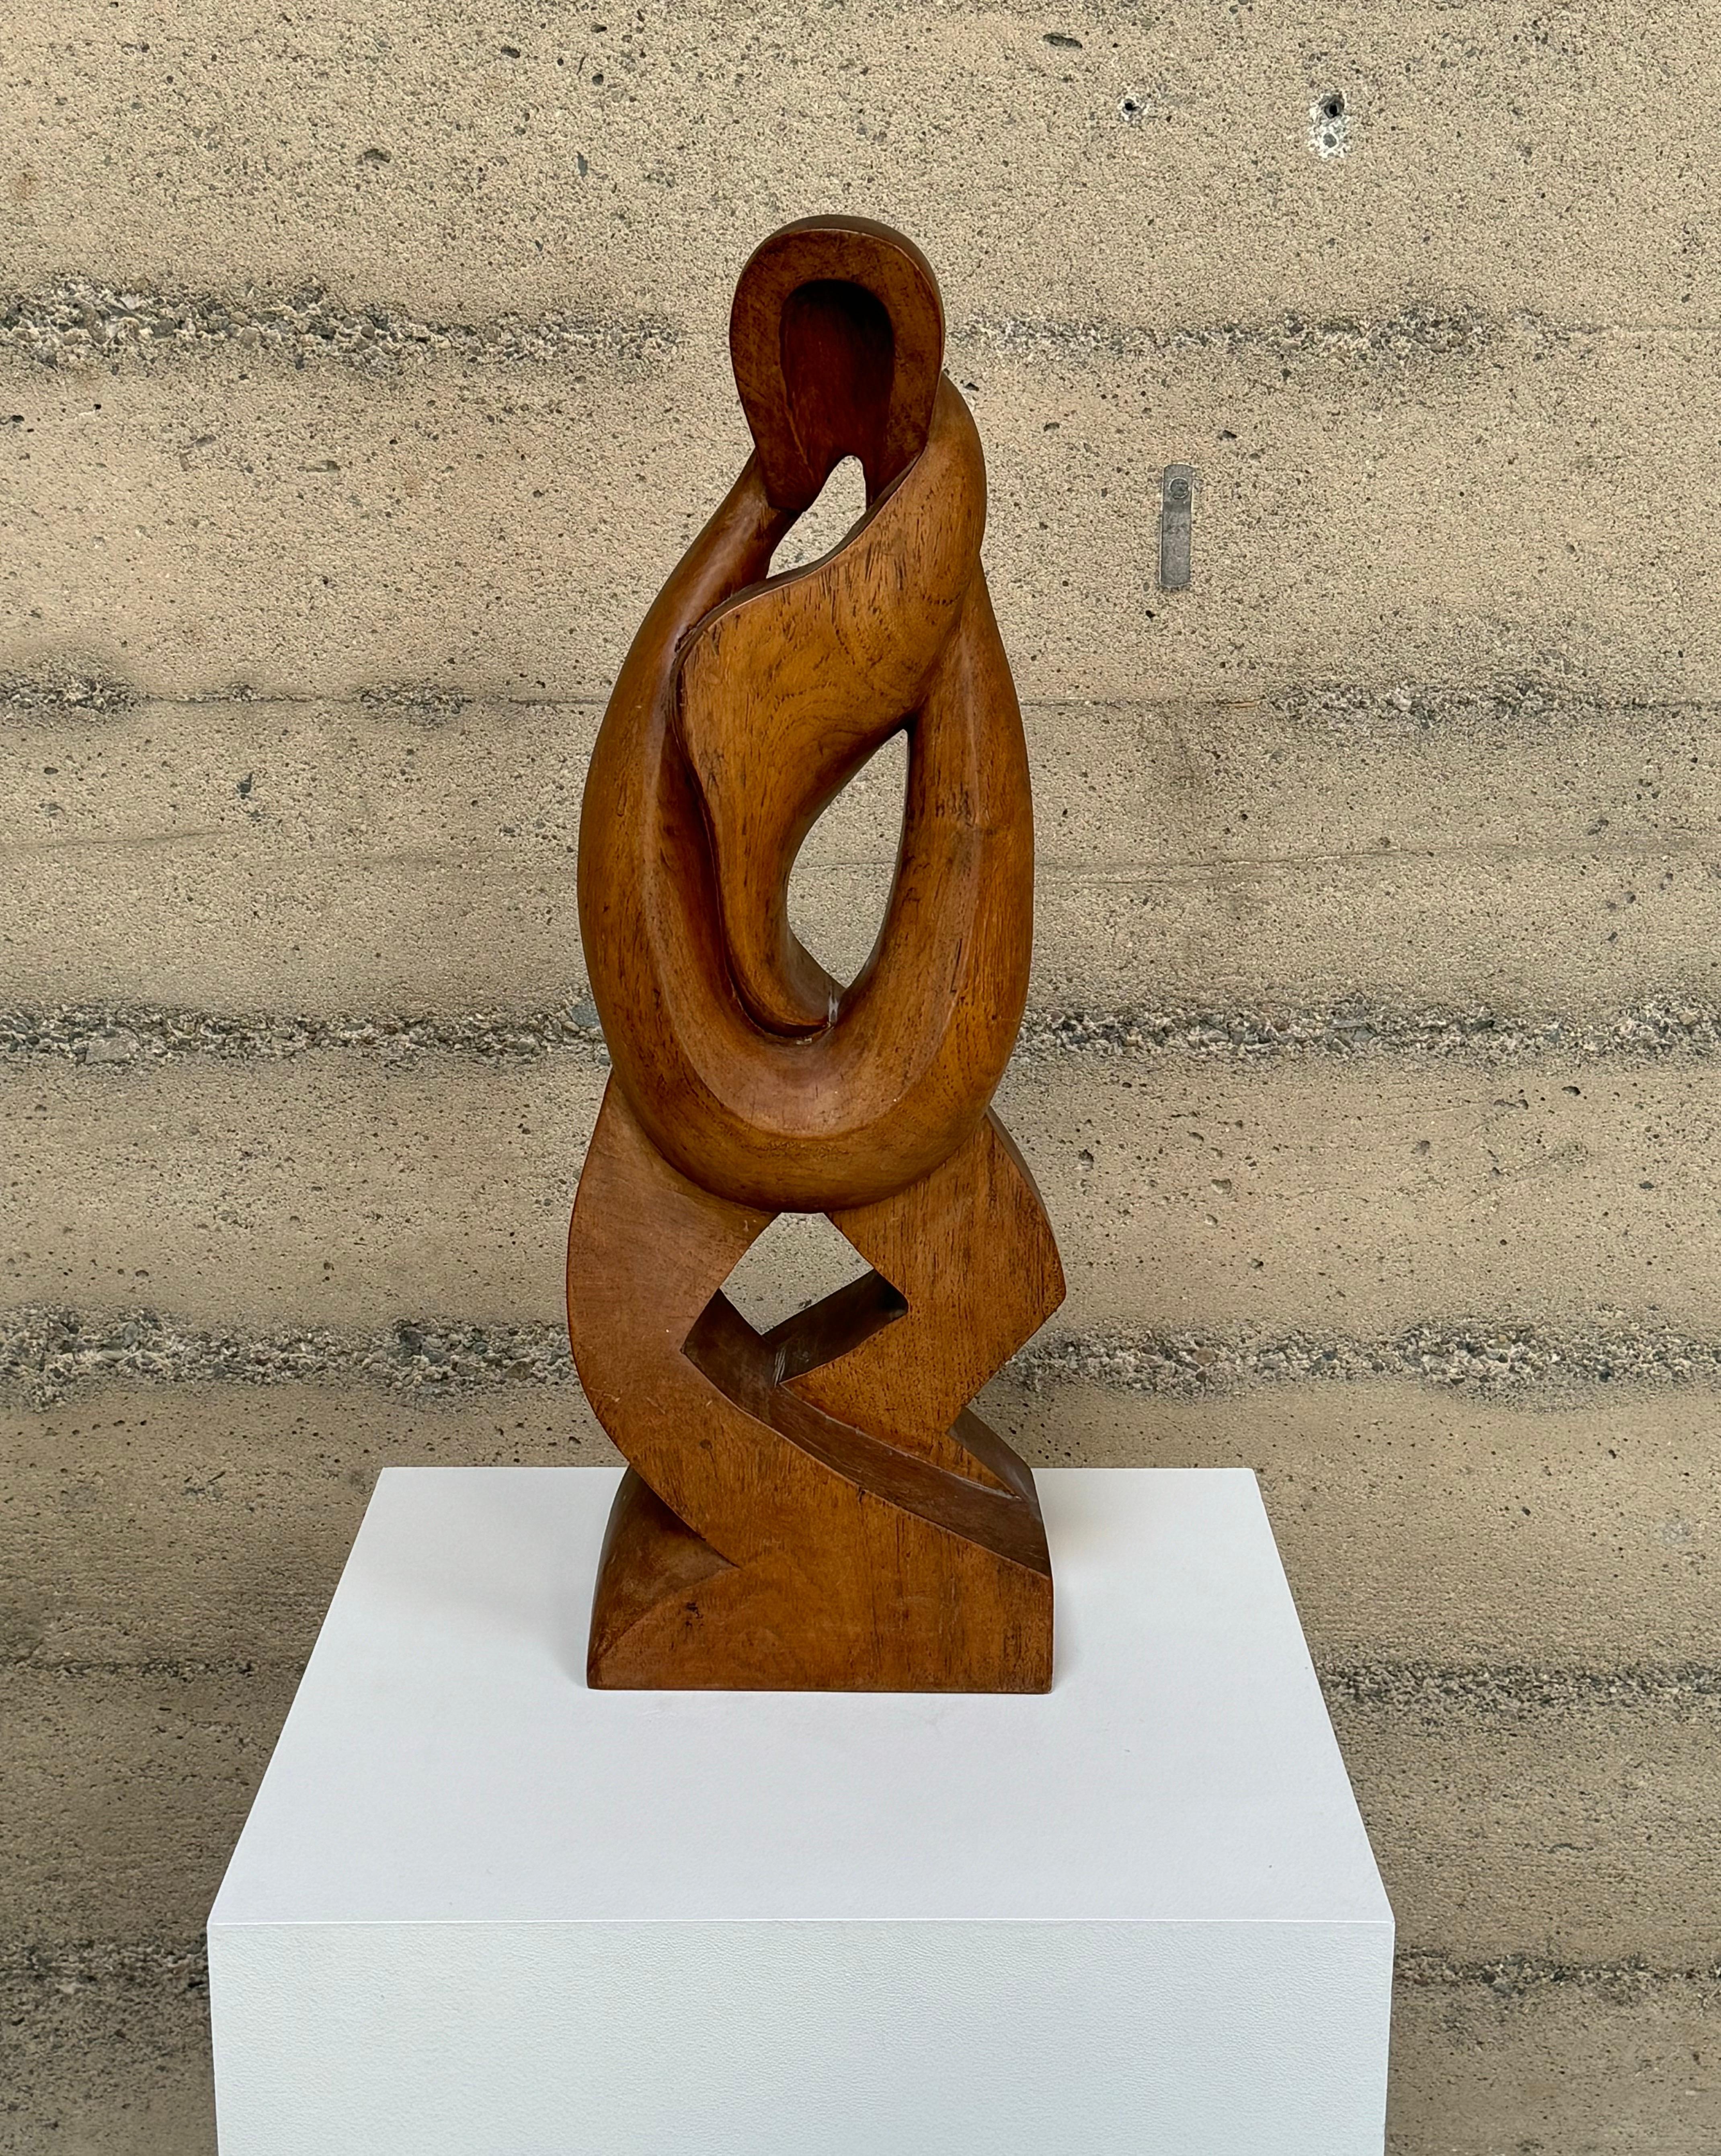 Eine figurative, abstrakte, handgeschnitzte Skulptur aus Nussbaumholz aus den 1950er Jahren. Eine symmetrische Form A mit fließender Bewegung in der Form, ausgehend von der Spitze und mit seinem Höhepunkt an der breiten Basis, mit schöner Maserung